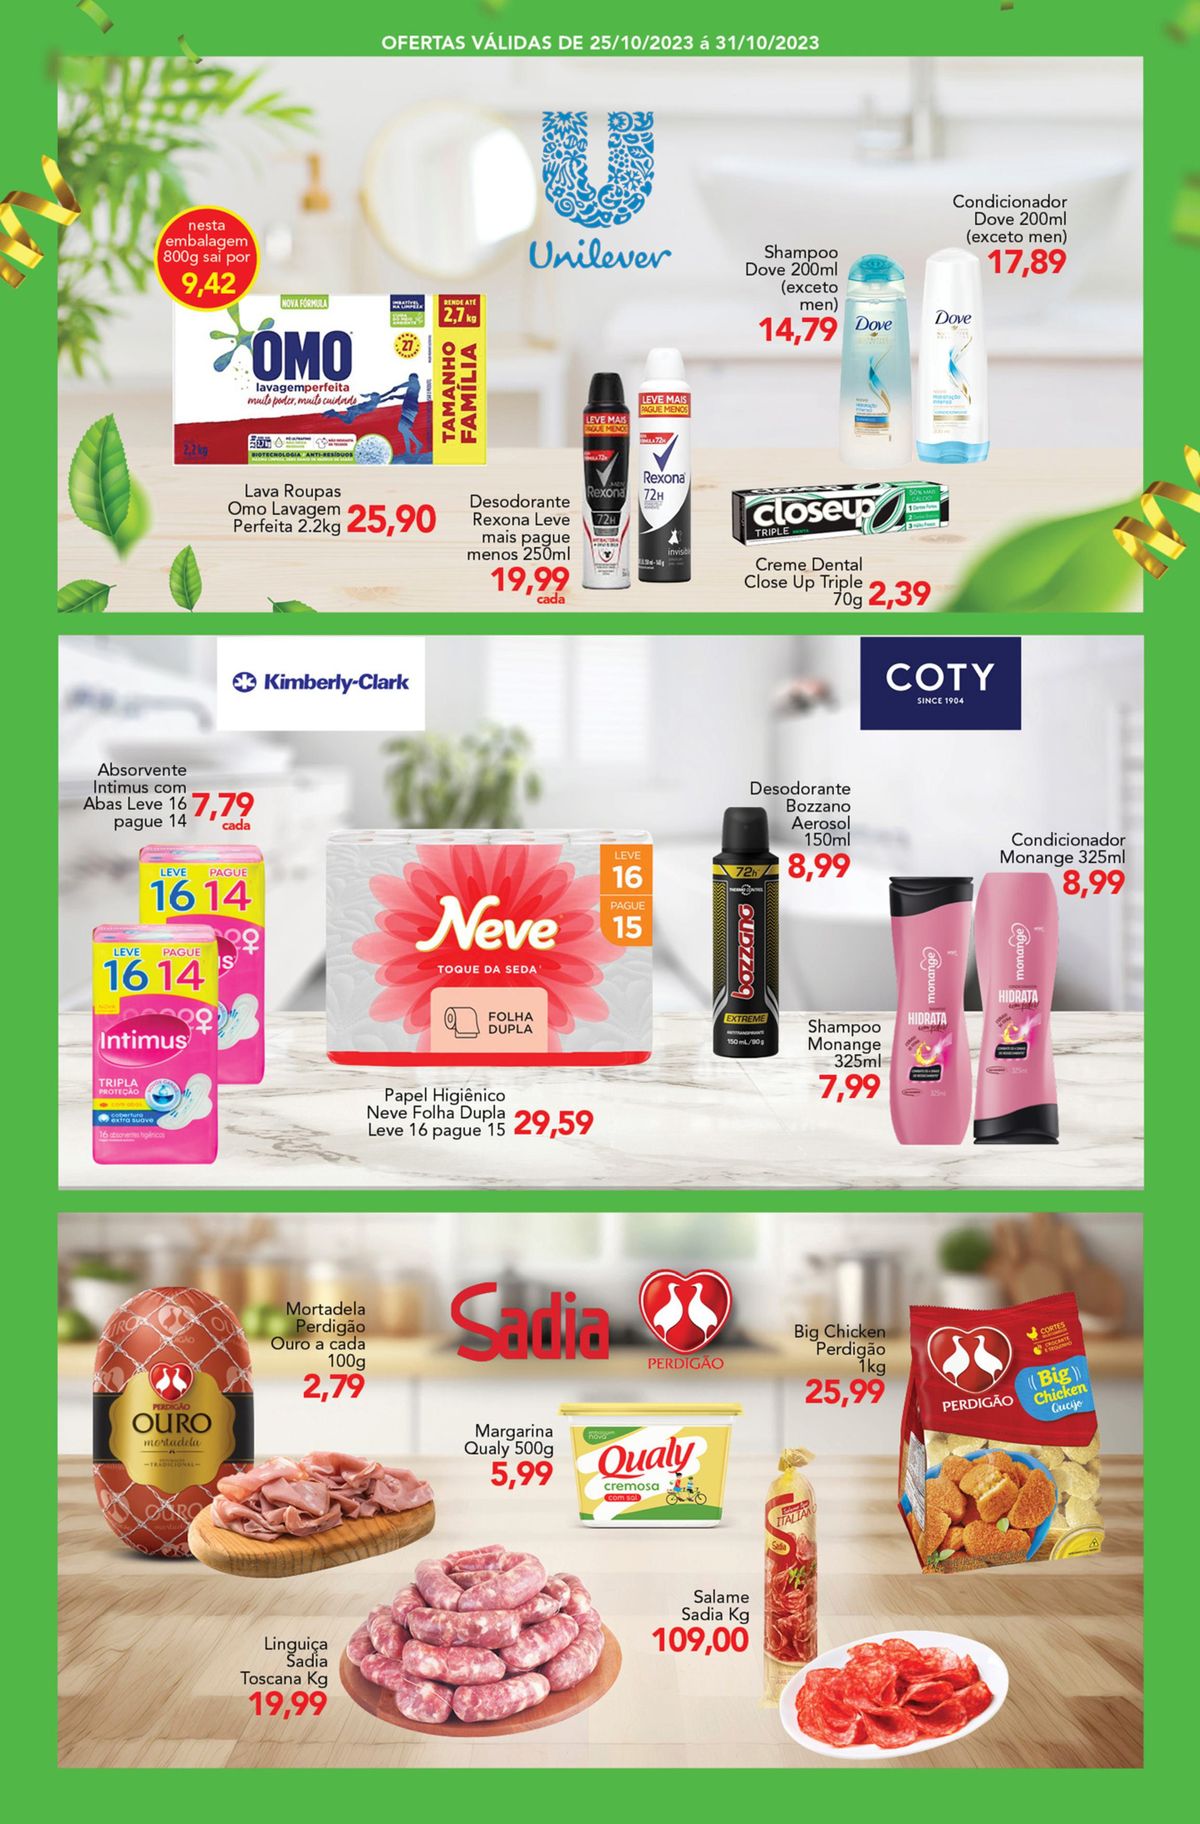 Promoção de produtos de higiene pessoal e limpeza da marca Dove, Rexona, Close Up e Neve.